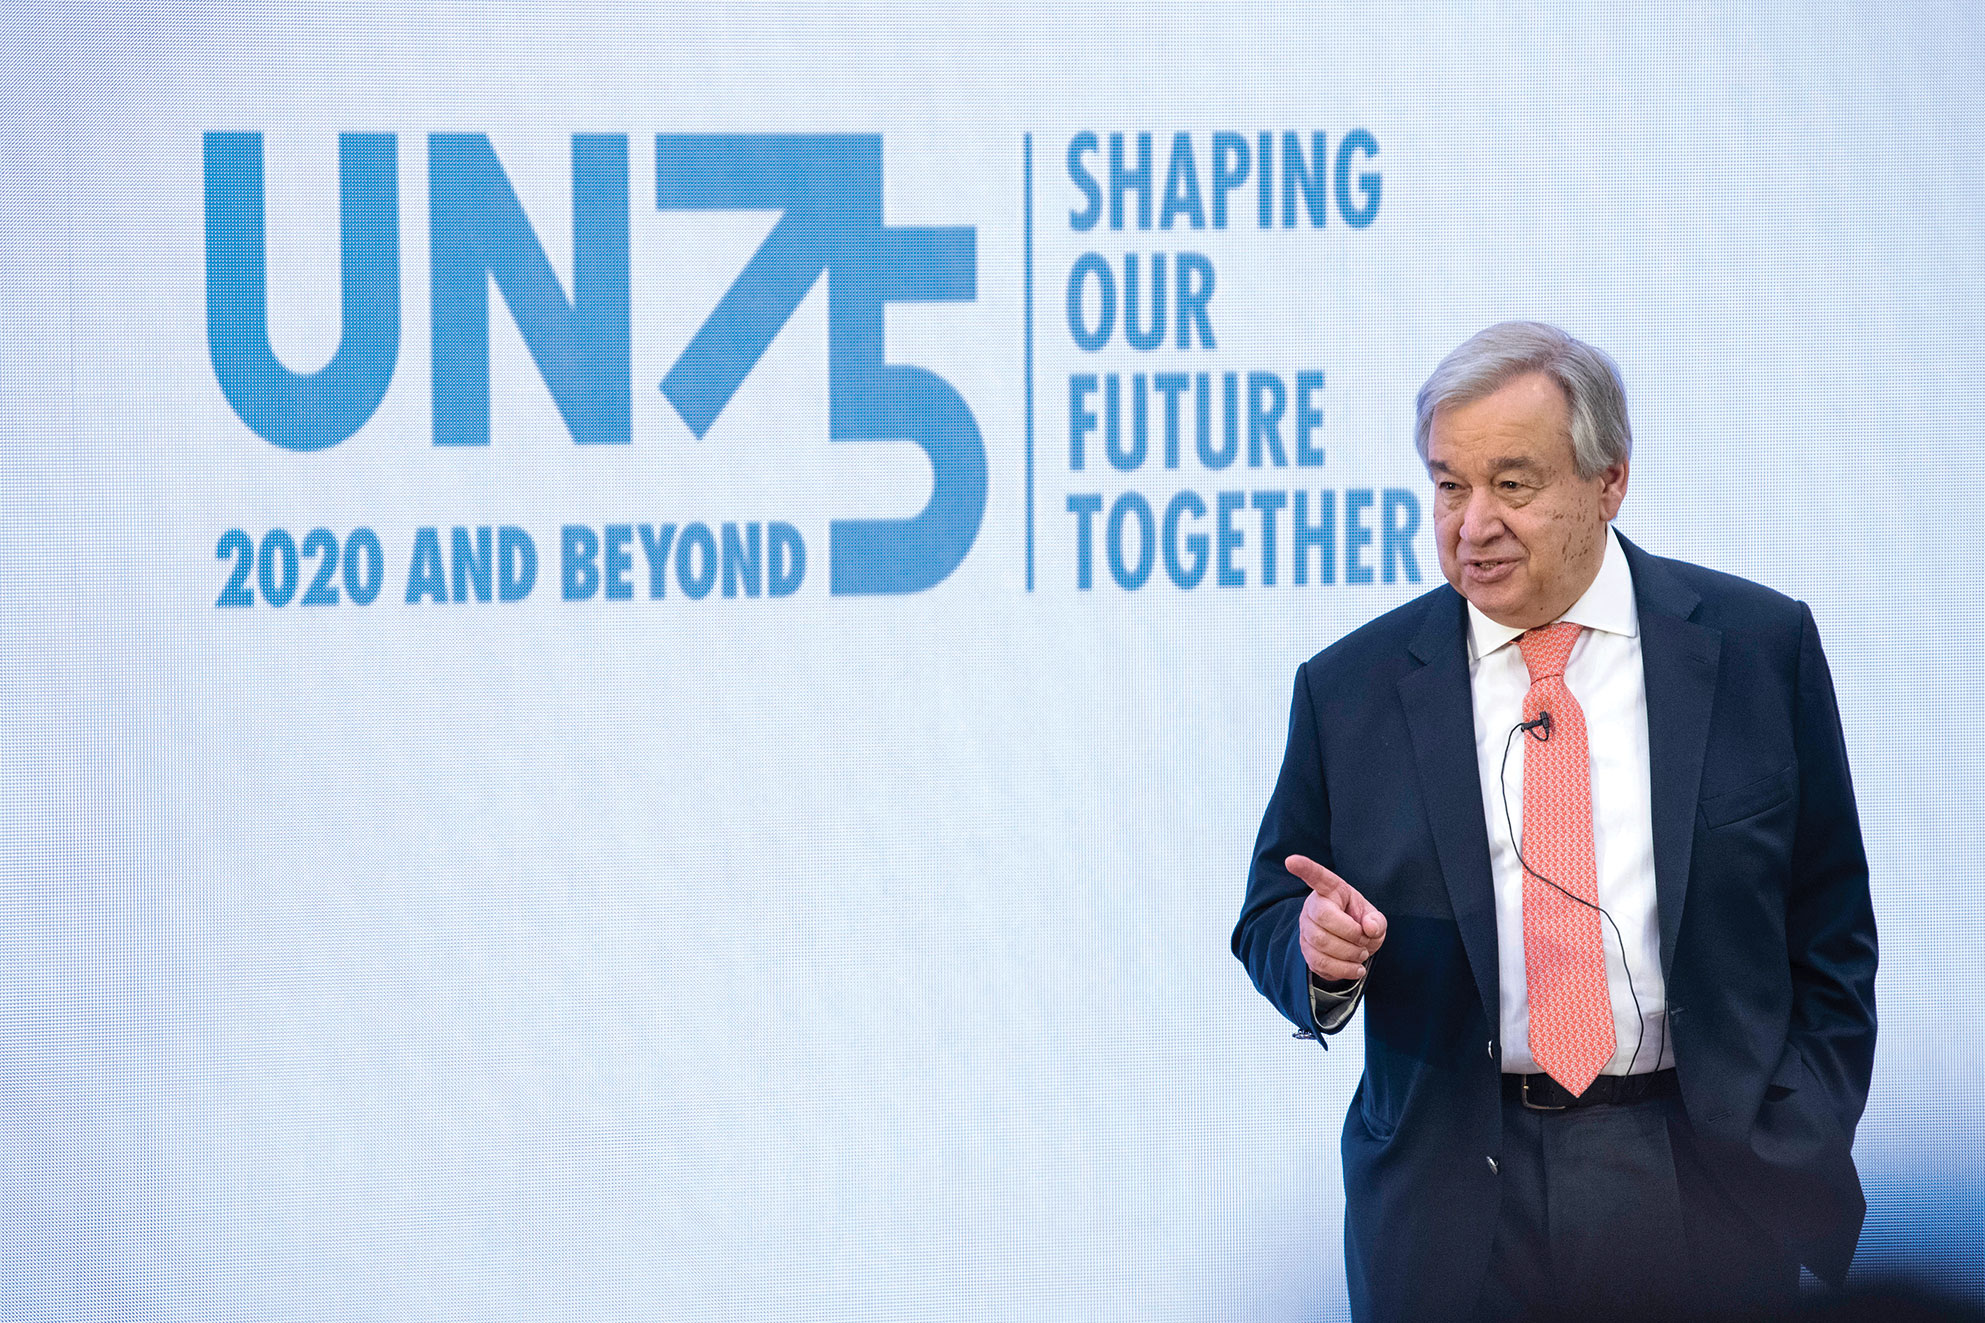 الأمين العام غوتيريش يقف أمام لافتة: UN75 2020 وما بعدها - لنشكل مستقبلنا معًا